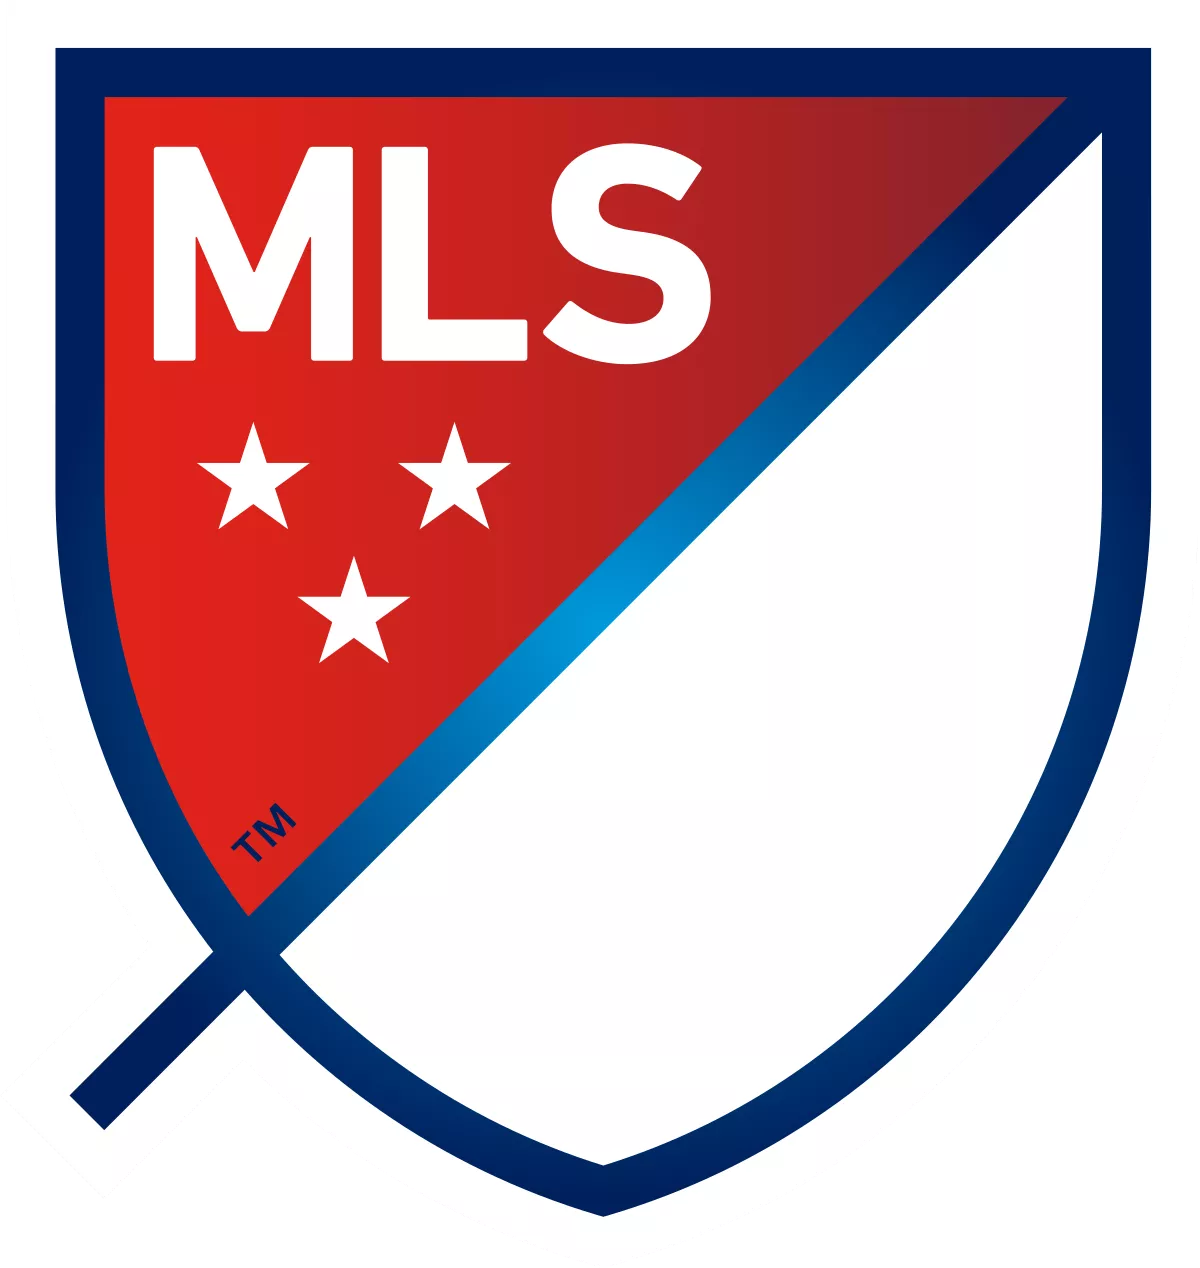 MLS - elmontyouthsoccer